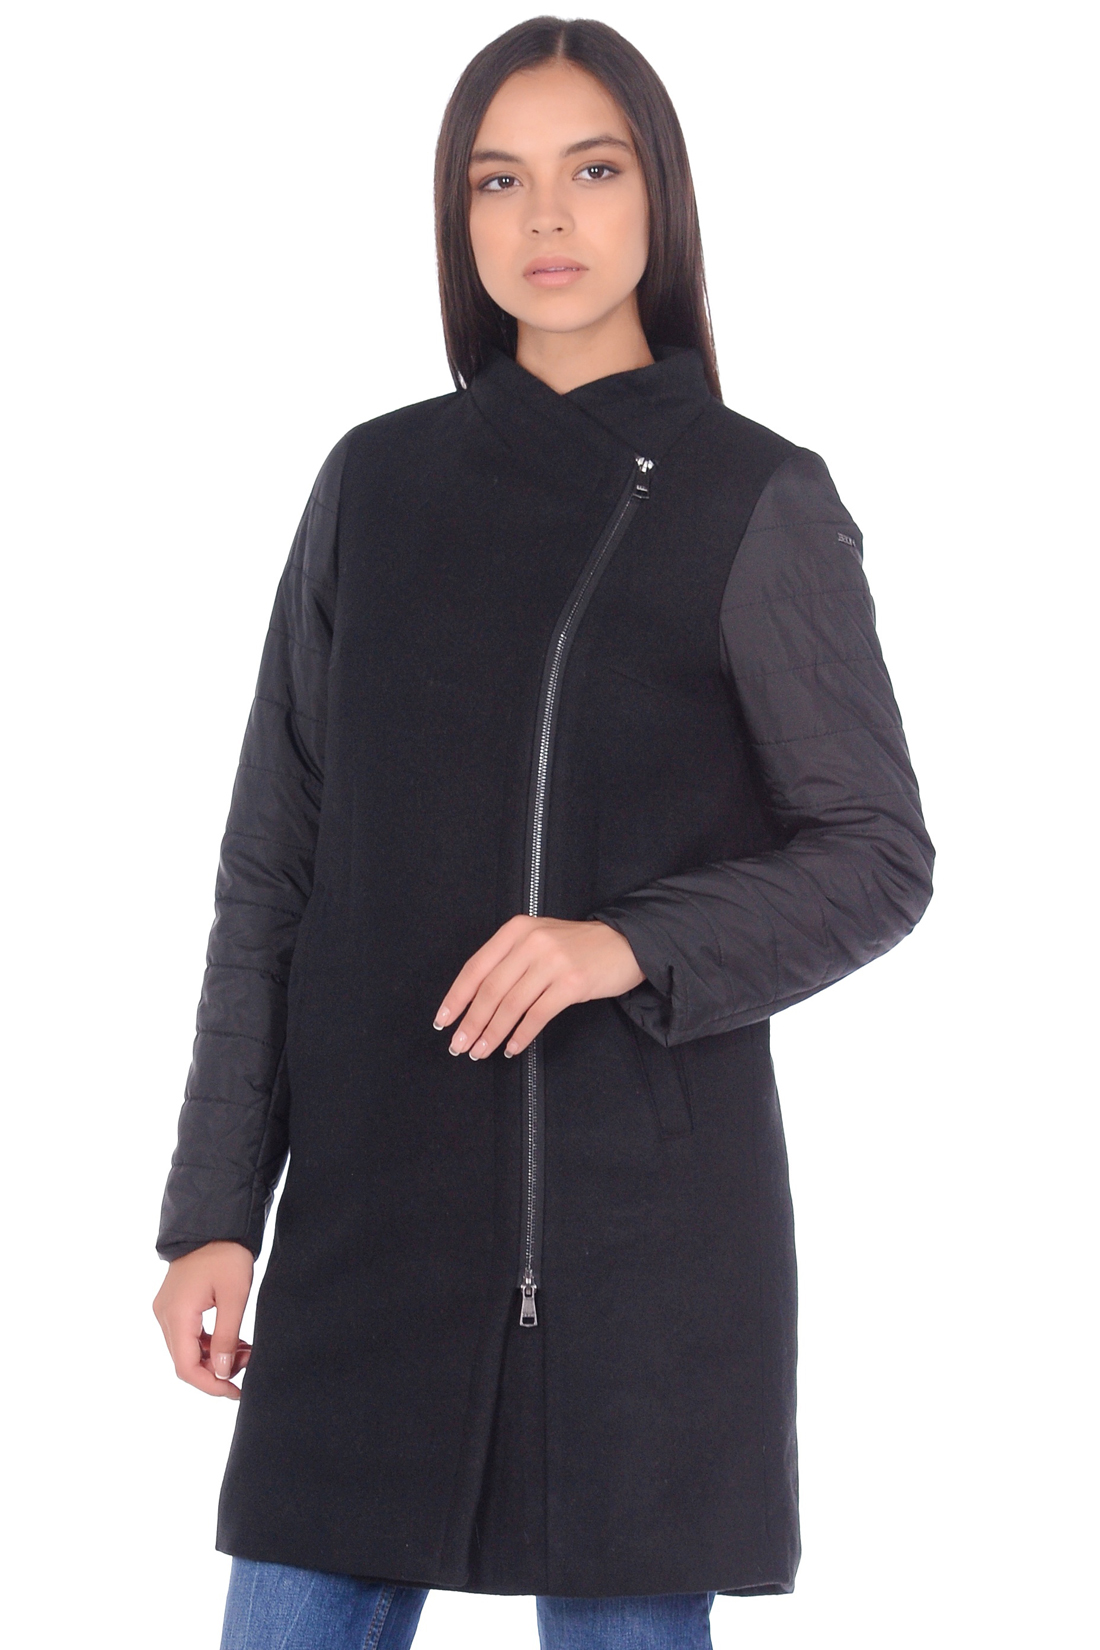 Пальто из комбинированных материалов (арт. baon B069501), размер XL, цвет черный